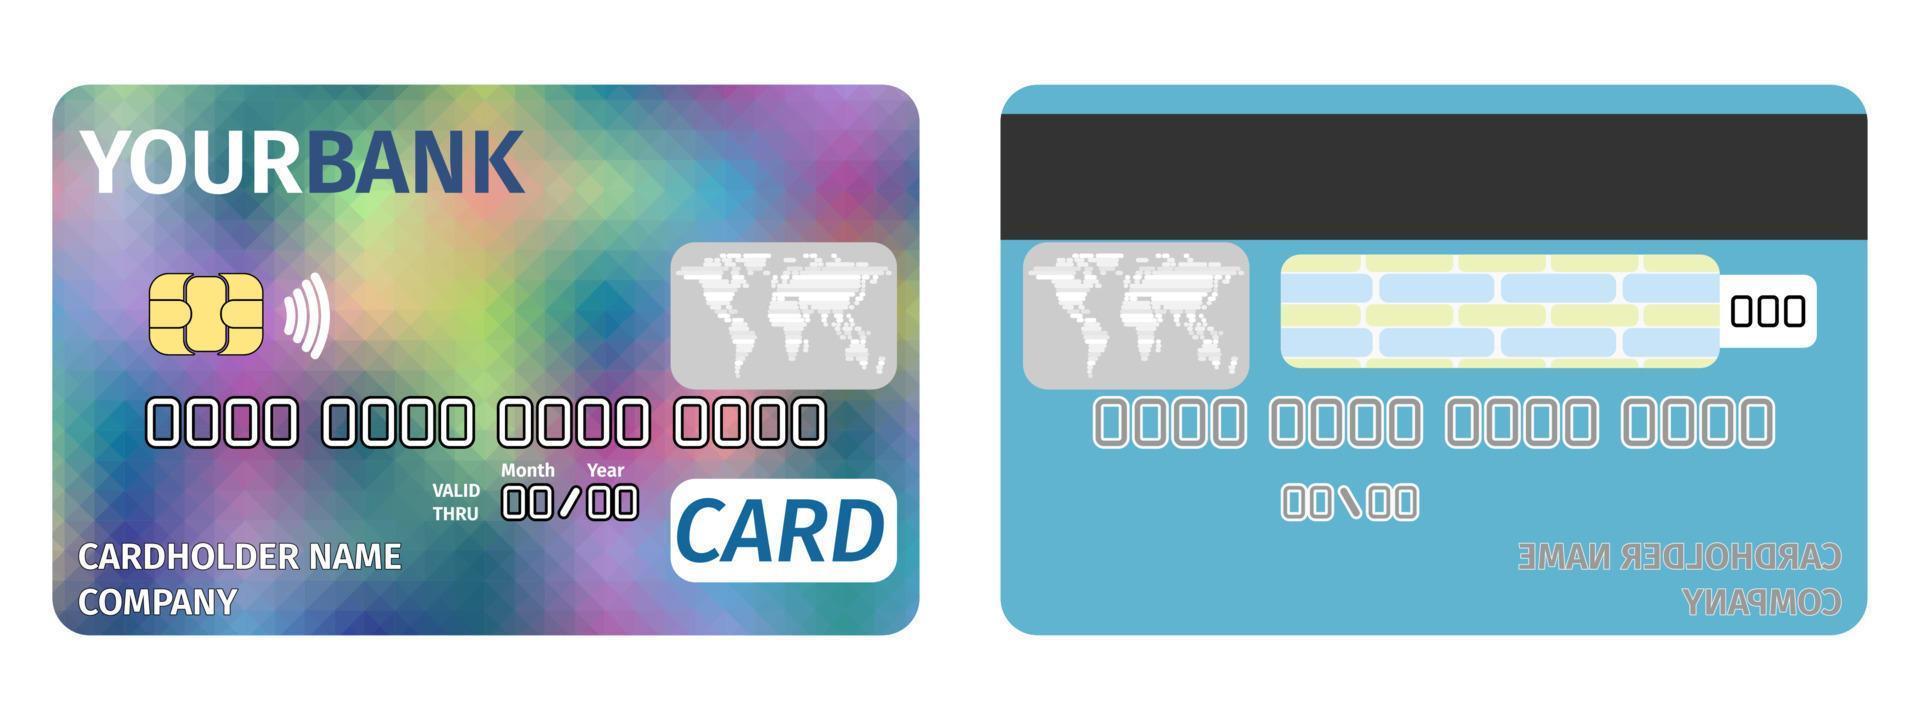 banca con tarjeta de crédito estilo plano brillante. imprimir nuevo vector